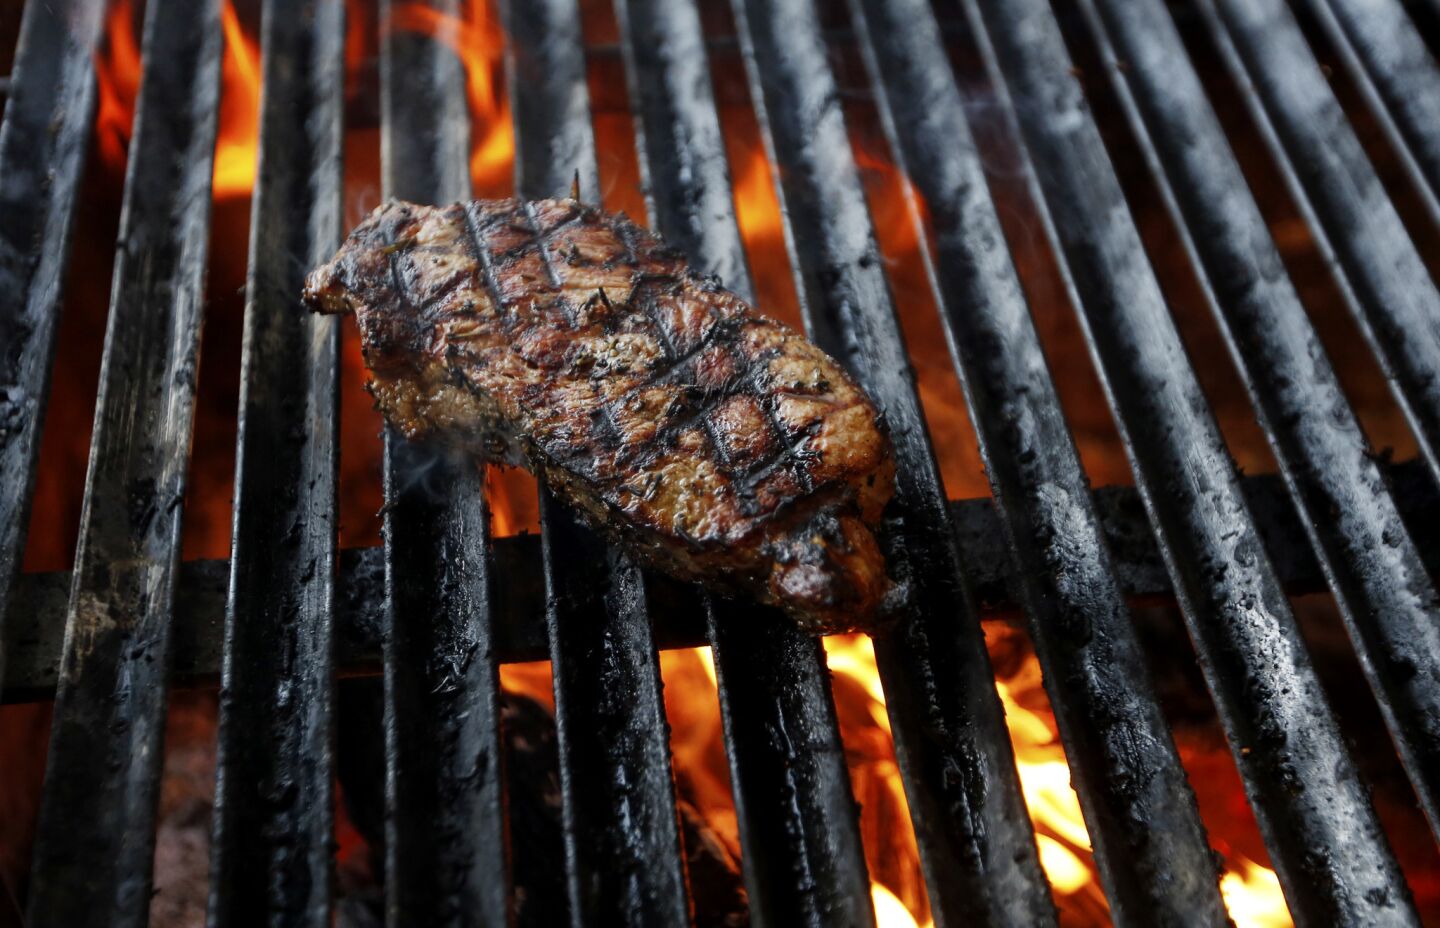 Steak on the grill at Salazar restaurant.